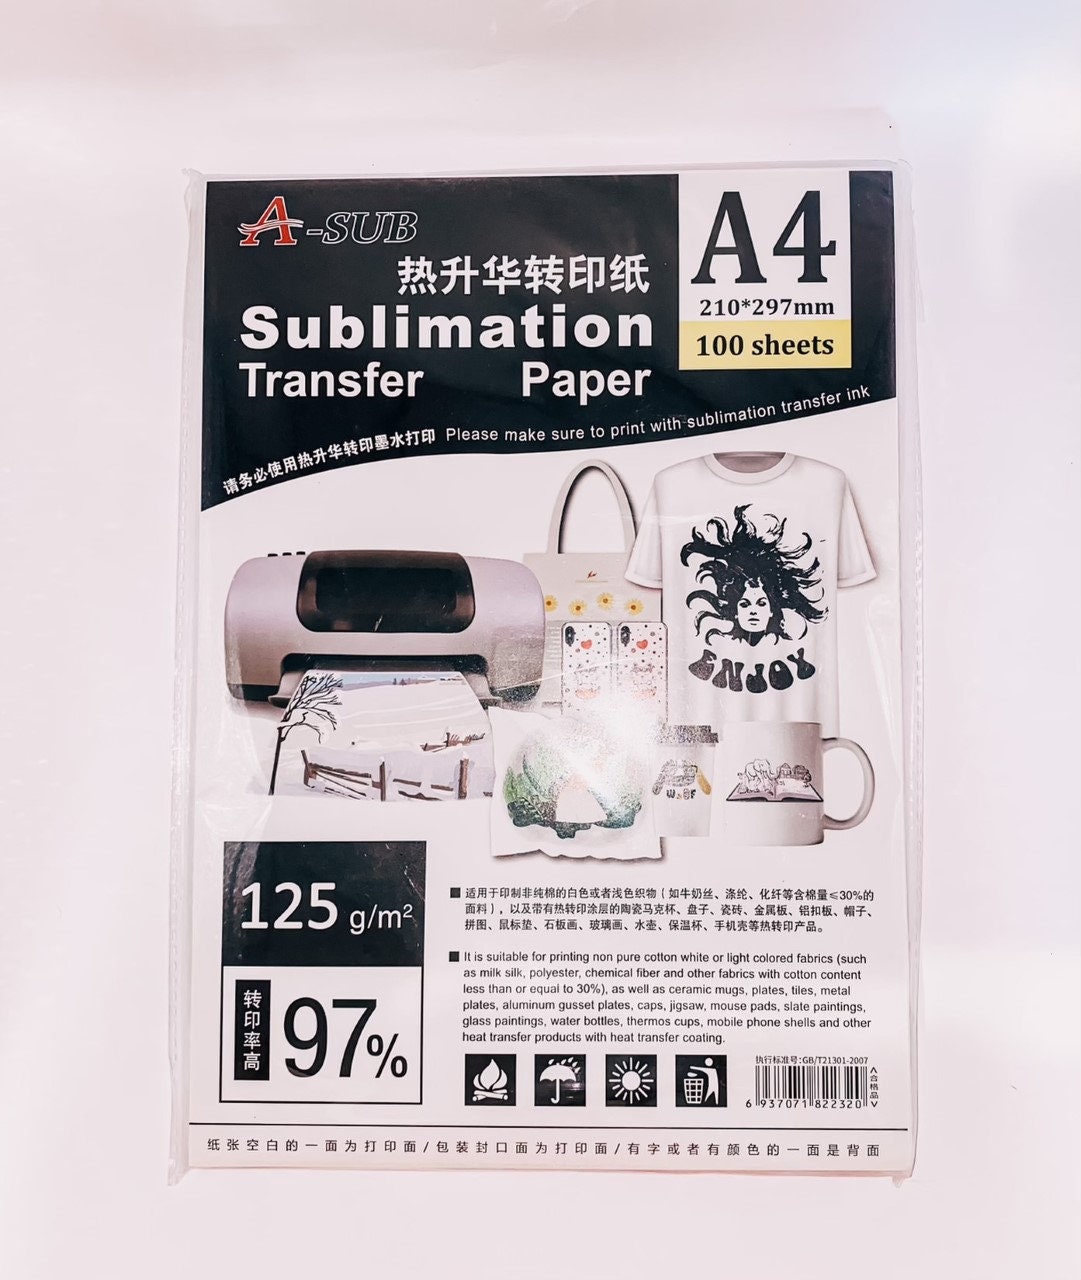 A-SUB Sublimation Paper 125g A4 8 1/4x 11 3/4 